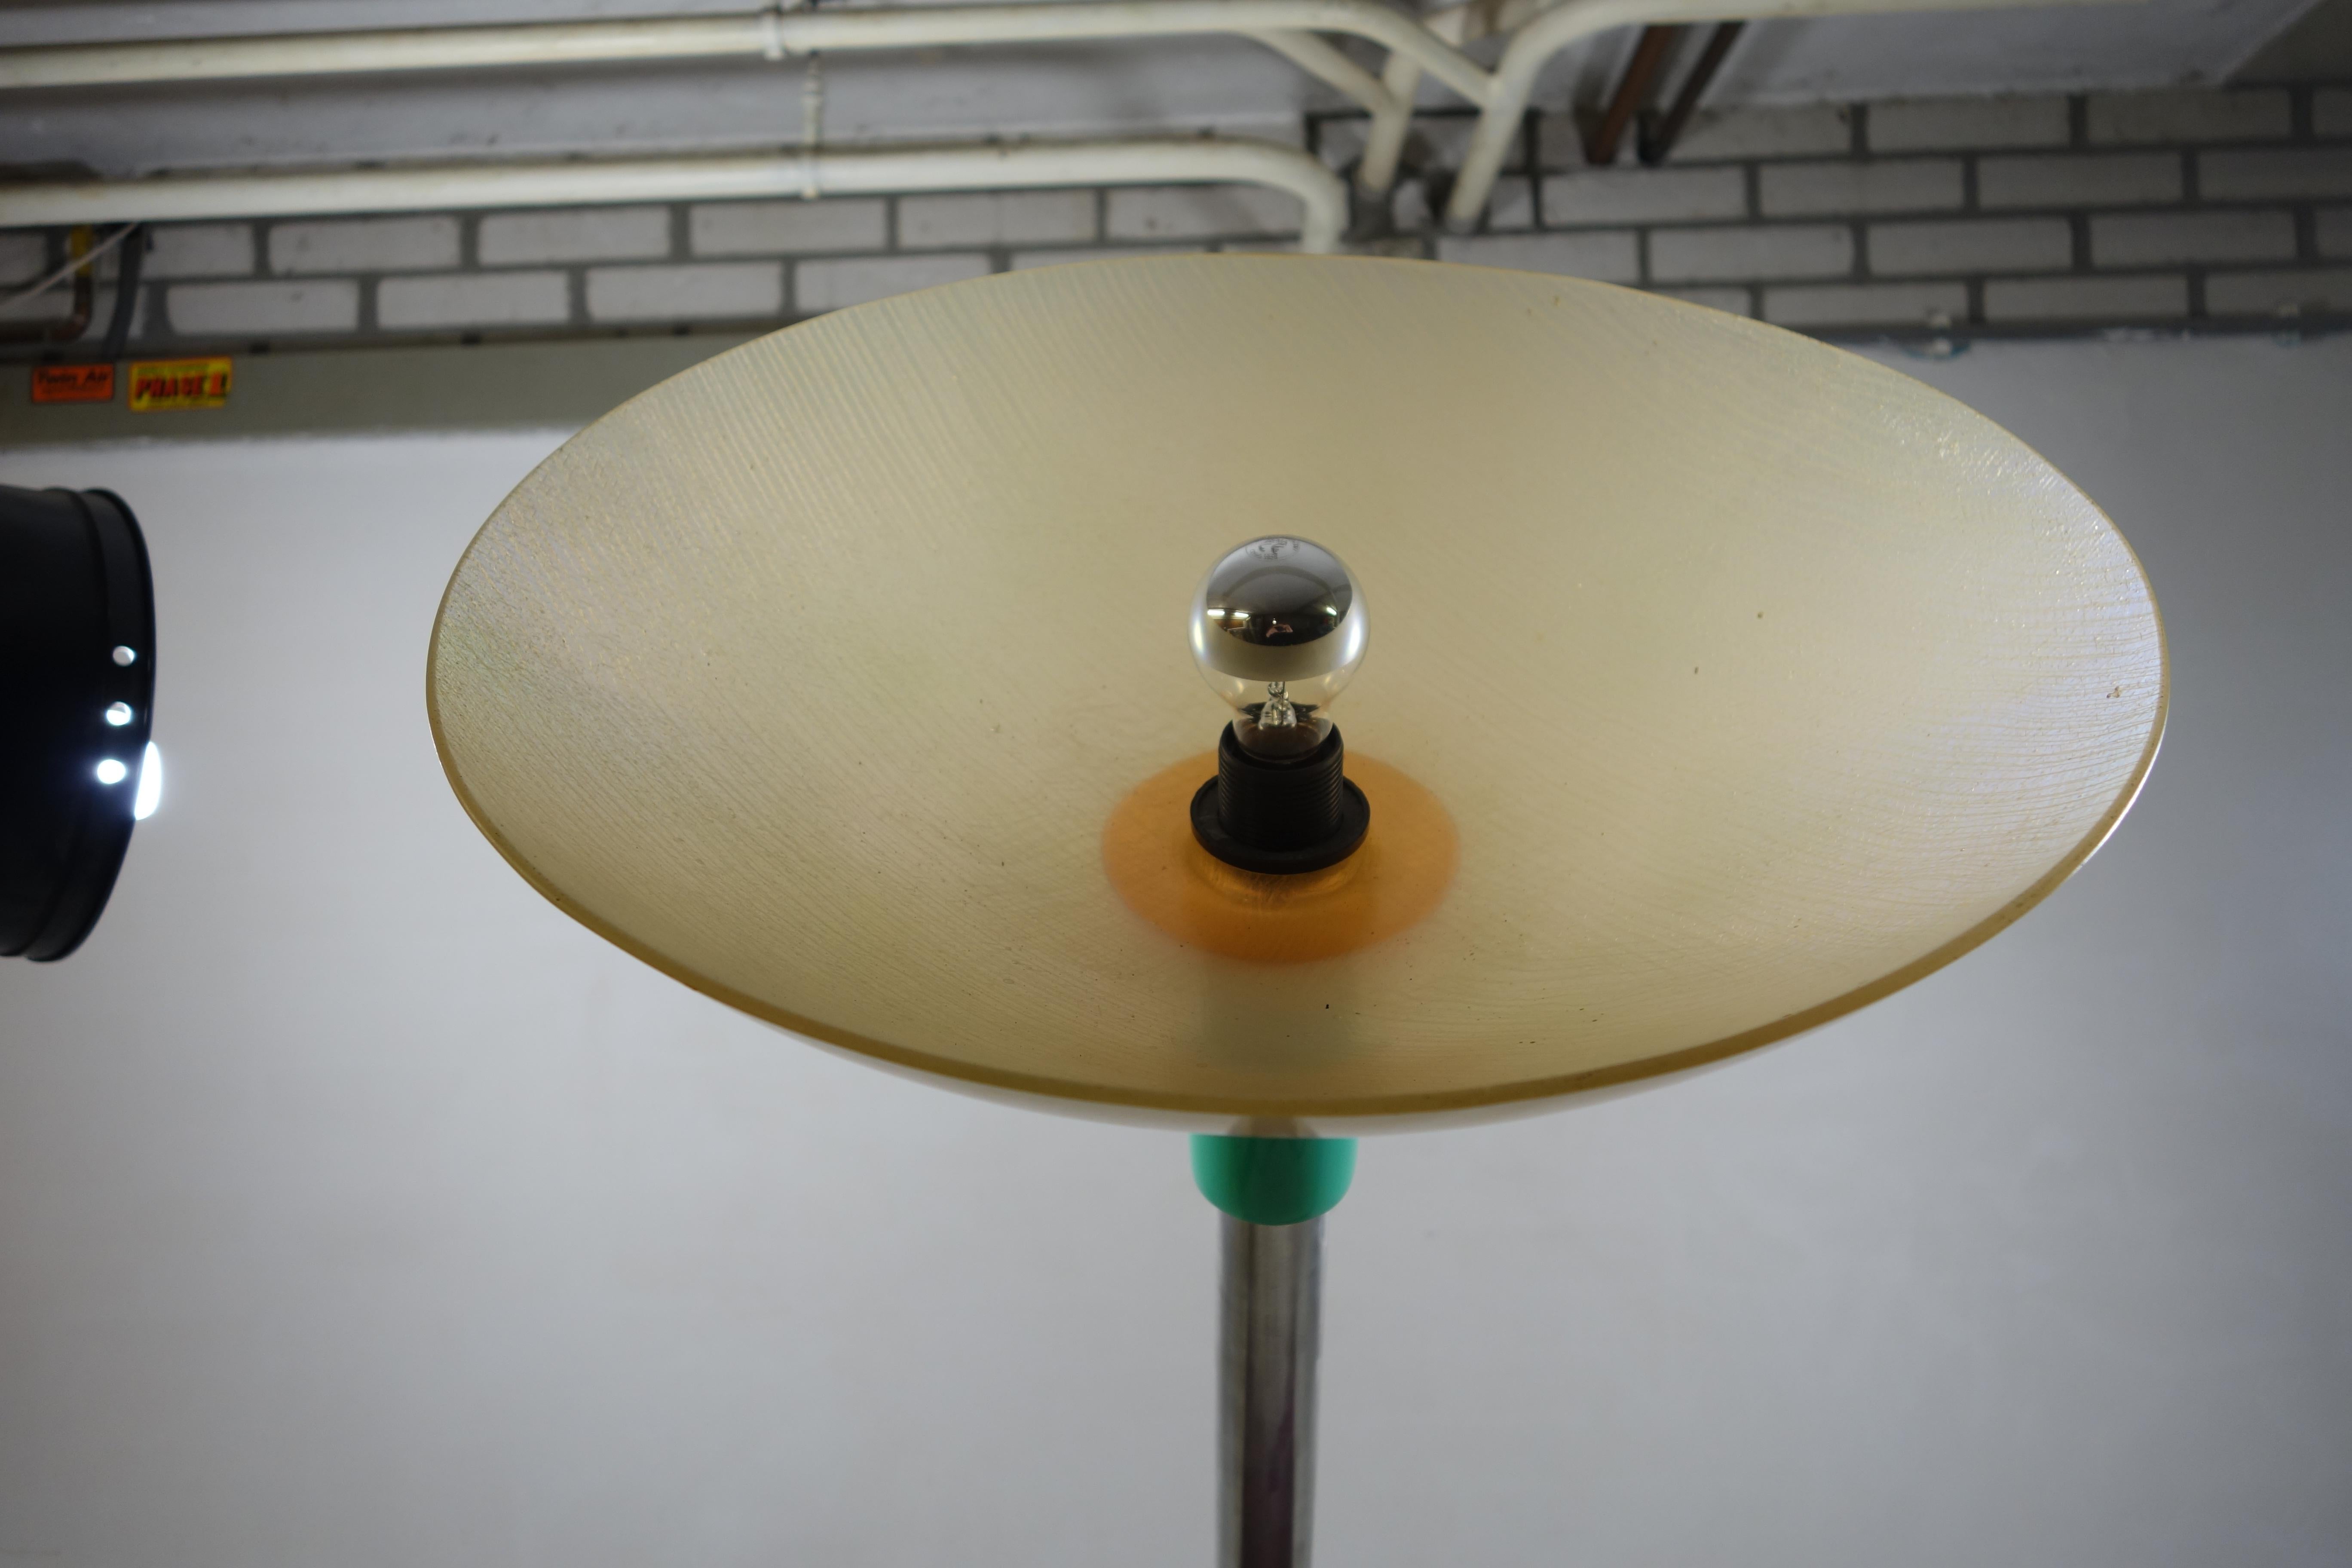 American Resin, Chrome and Fiberglass Floor Lamp Postmodern Memphis Style by Steve Zoller For Sale